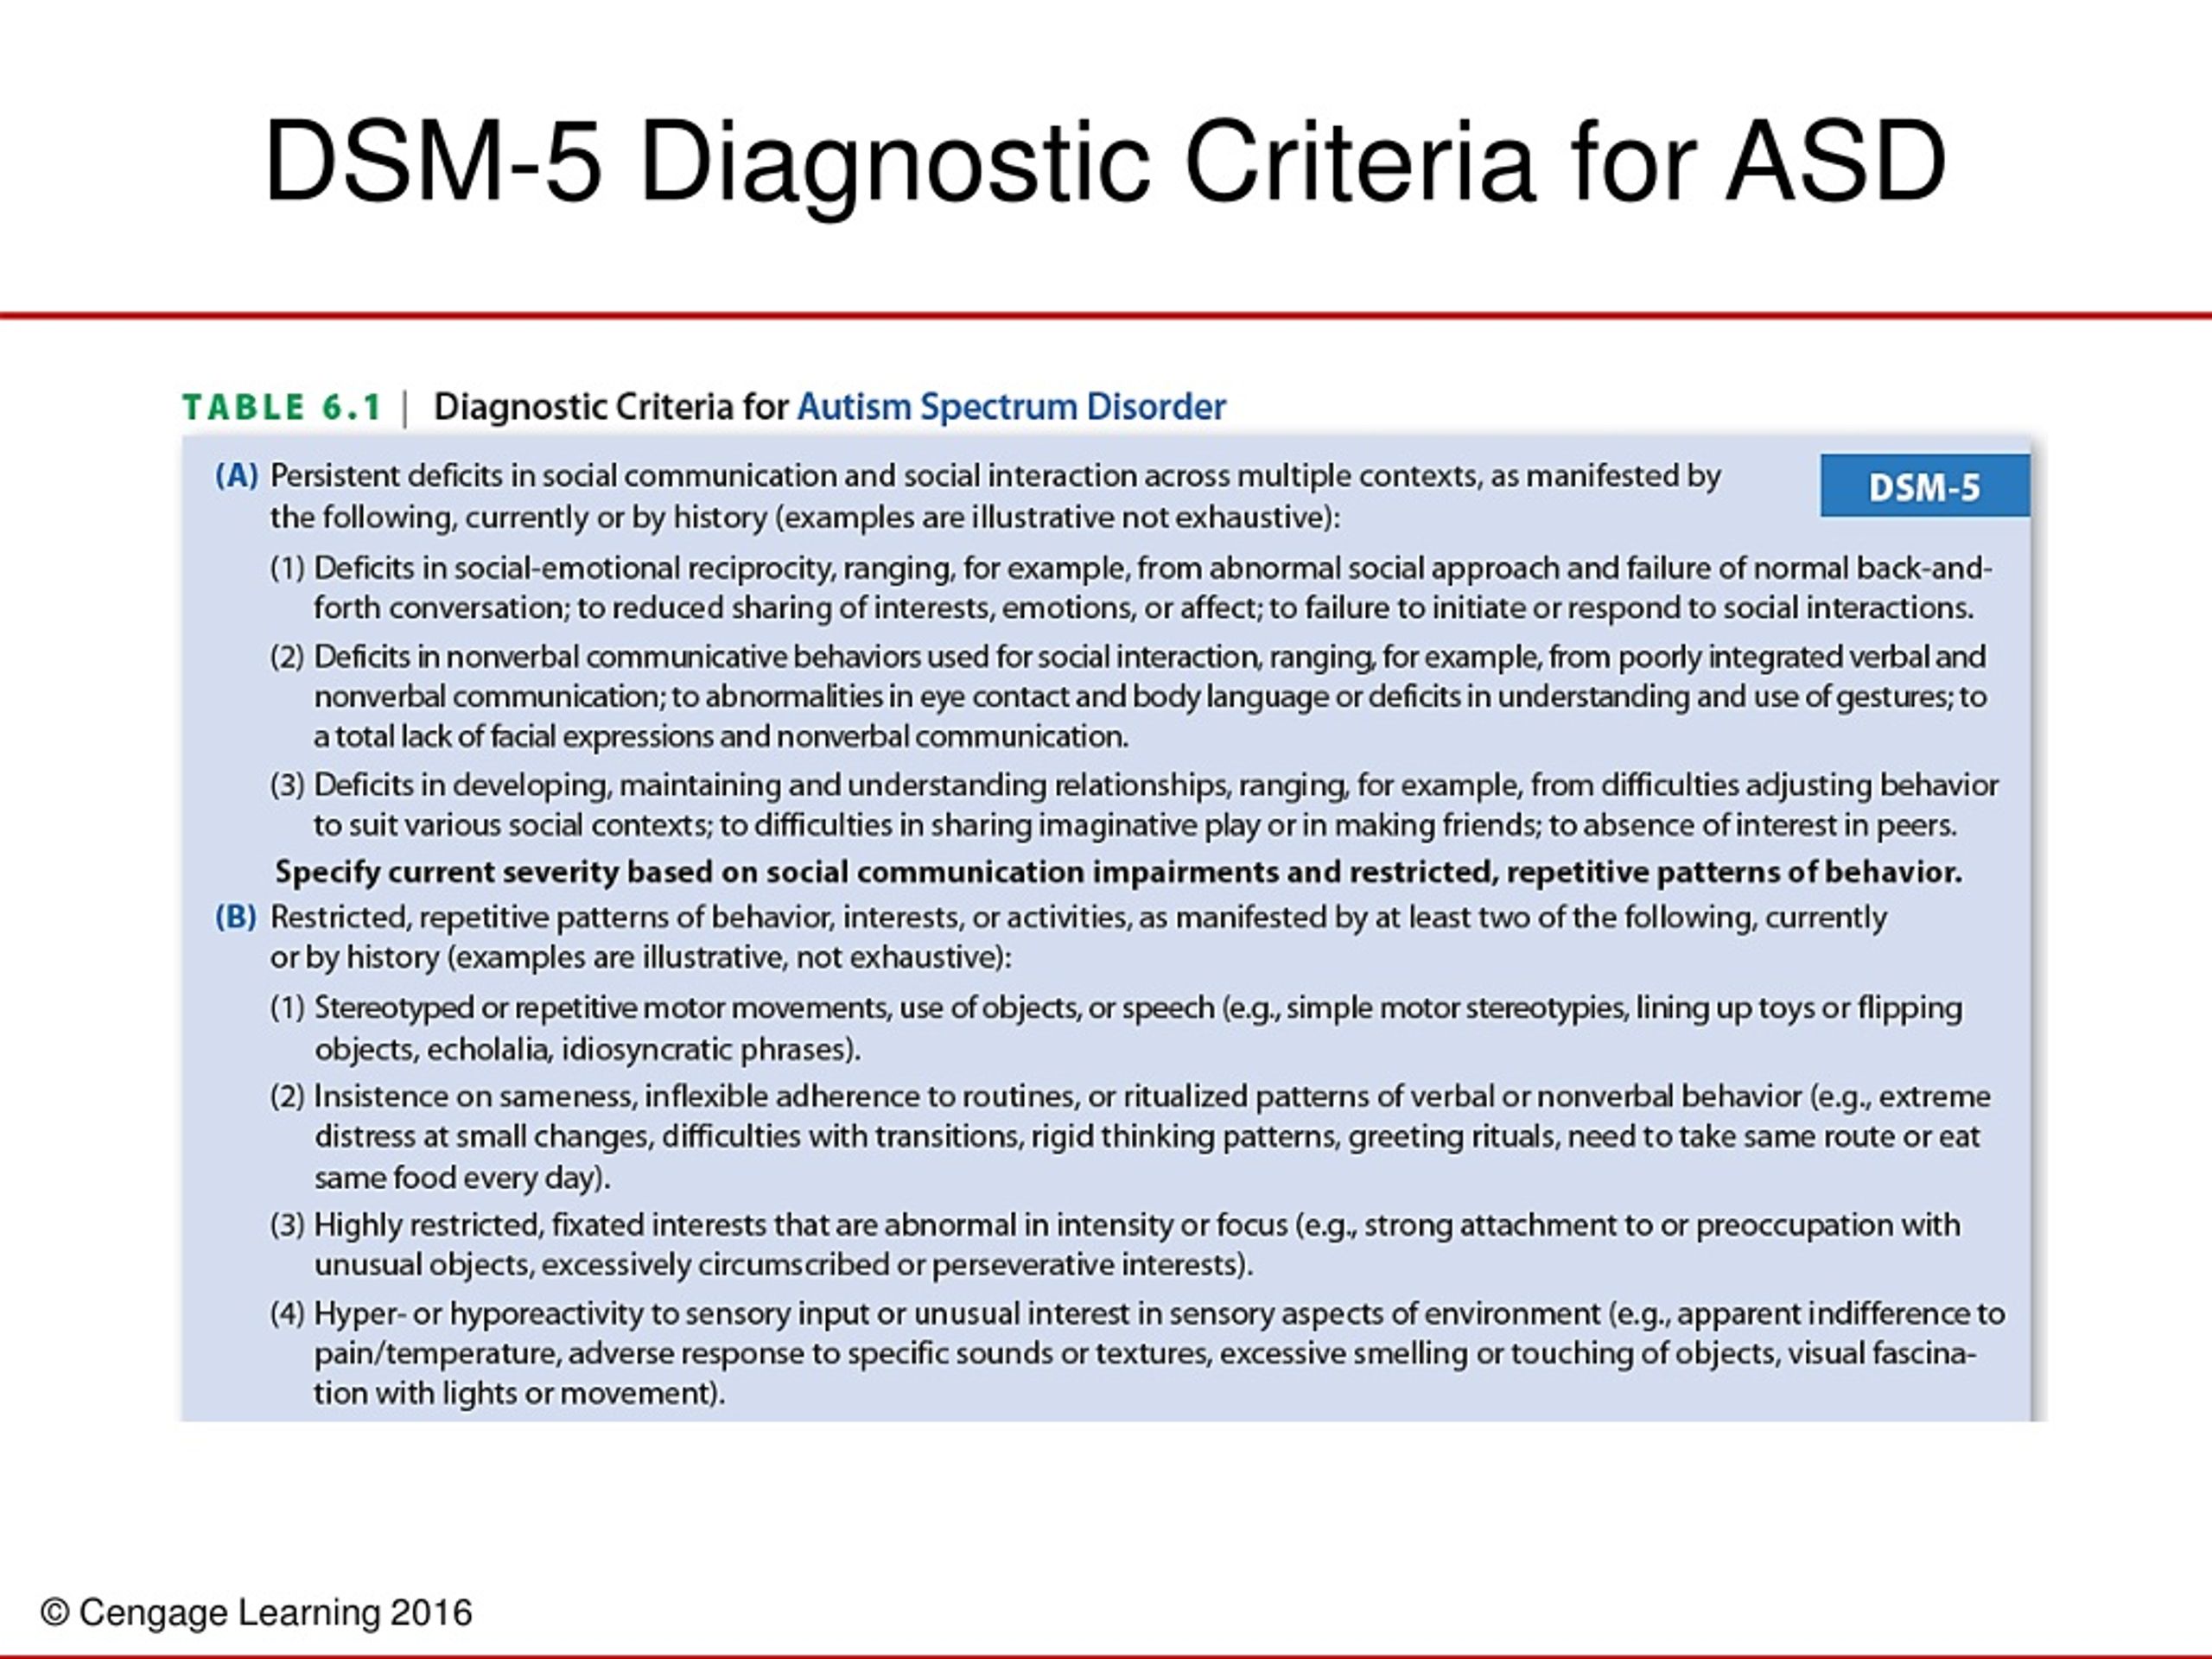 dsm 5 asd diagnistic